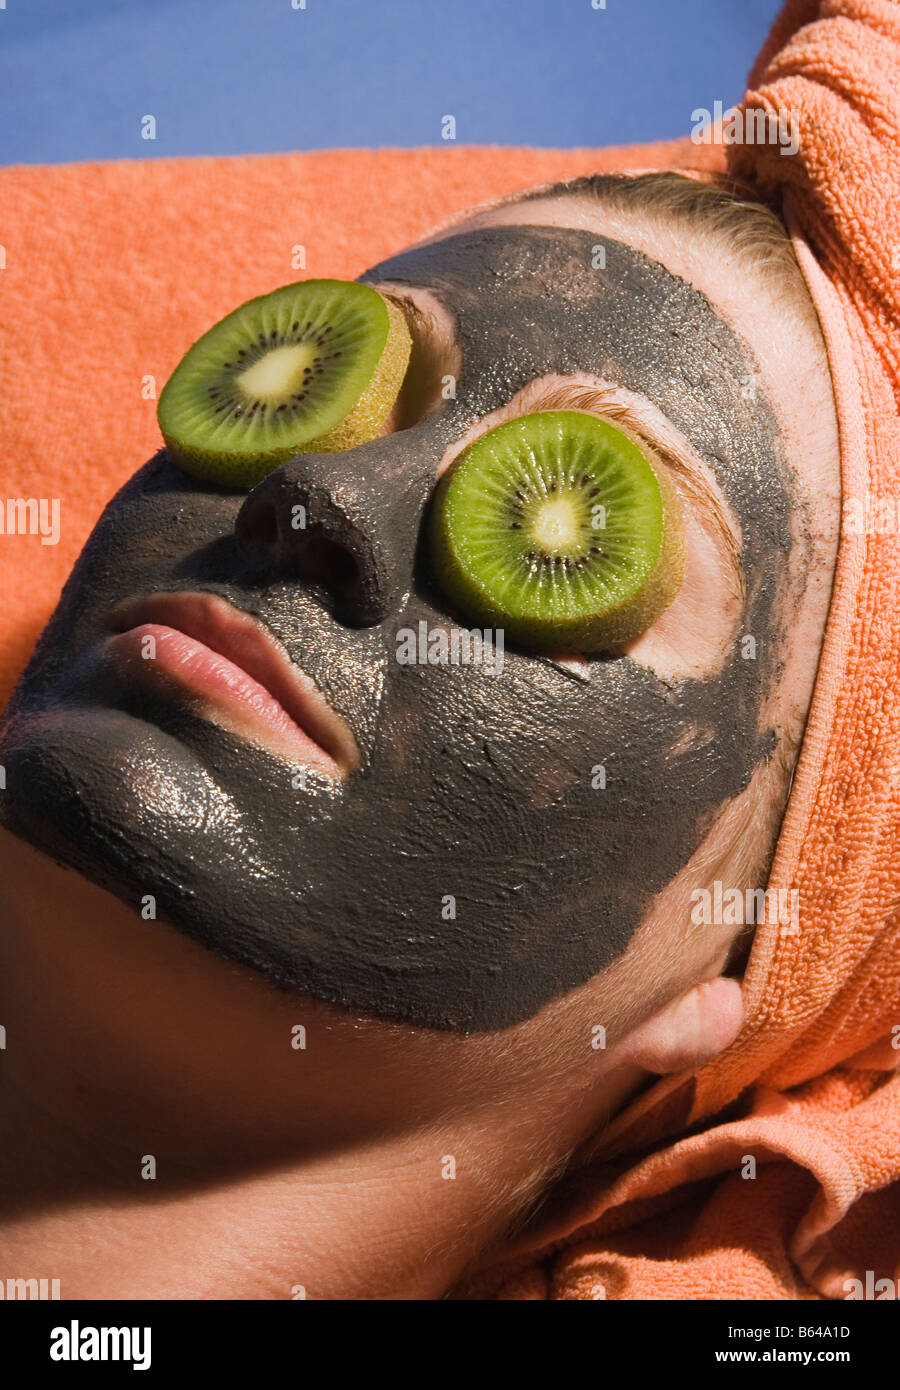 Giovane donna con esfoliante viso e maschera delle fette di kiwi su i suoi occhi Foto Stock